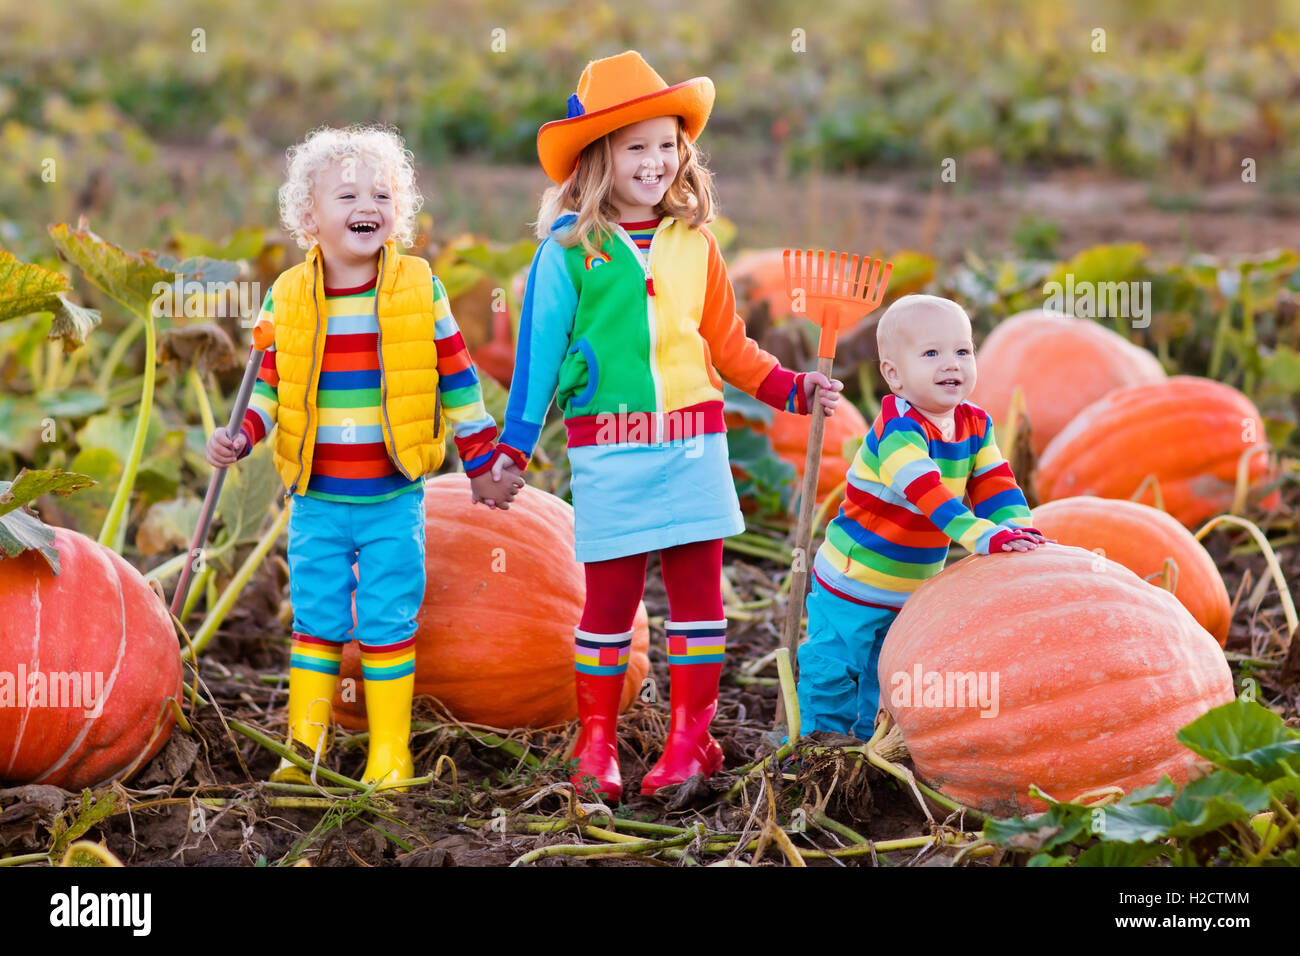 Kleine Mädchen, jungen und Baby Kommissionierung Kürbisse zu Halloween Pumpkin Patch. Kinder spielen im Bereich der Kürbis. Kinder wählen Sie Gemüse Stockfoto